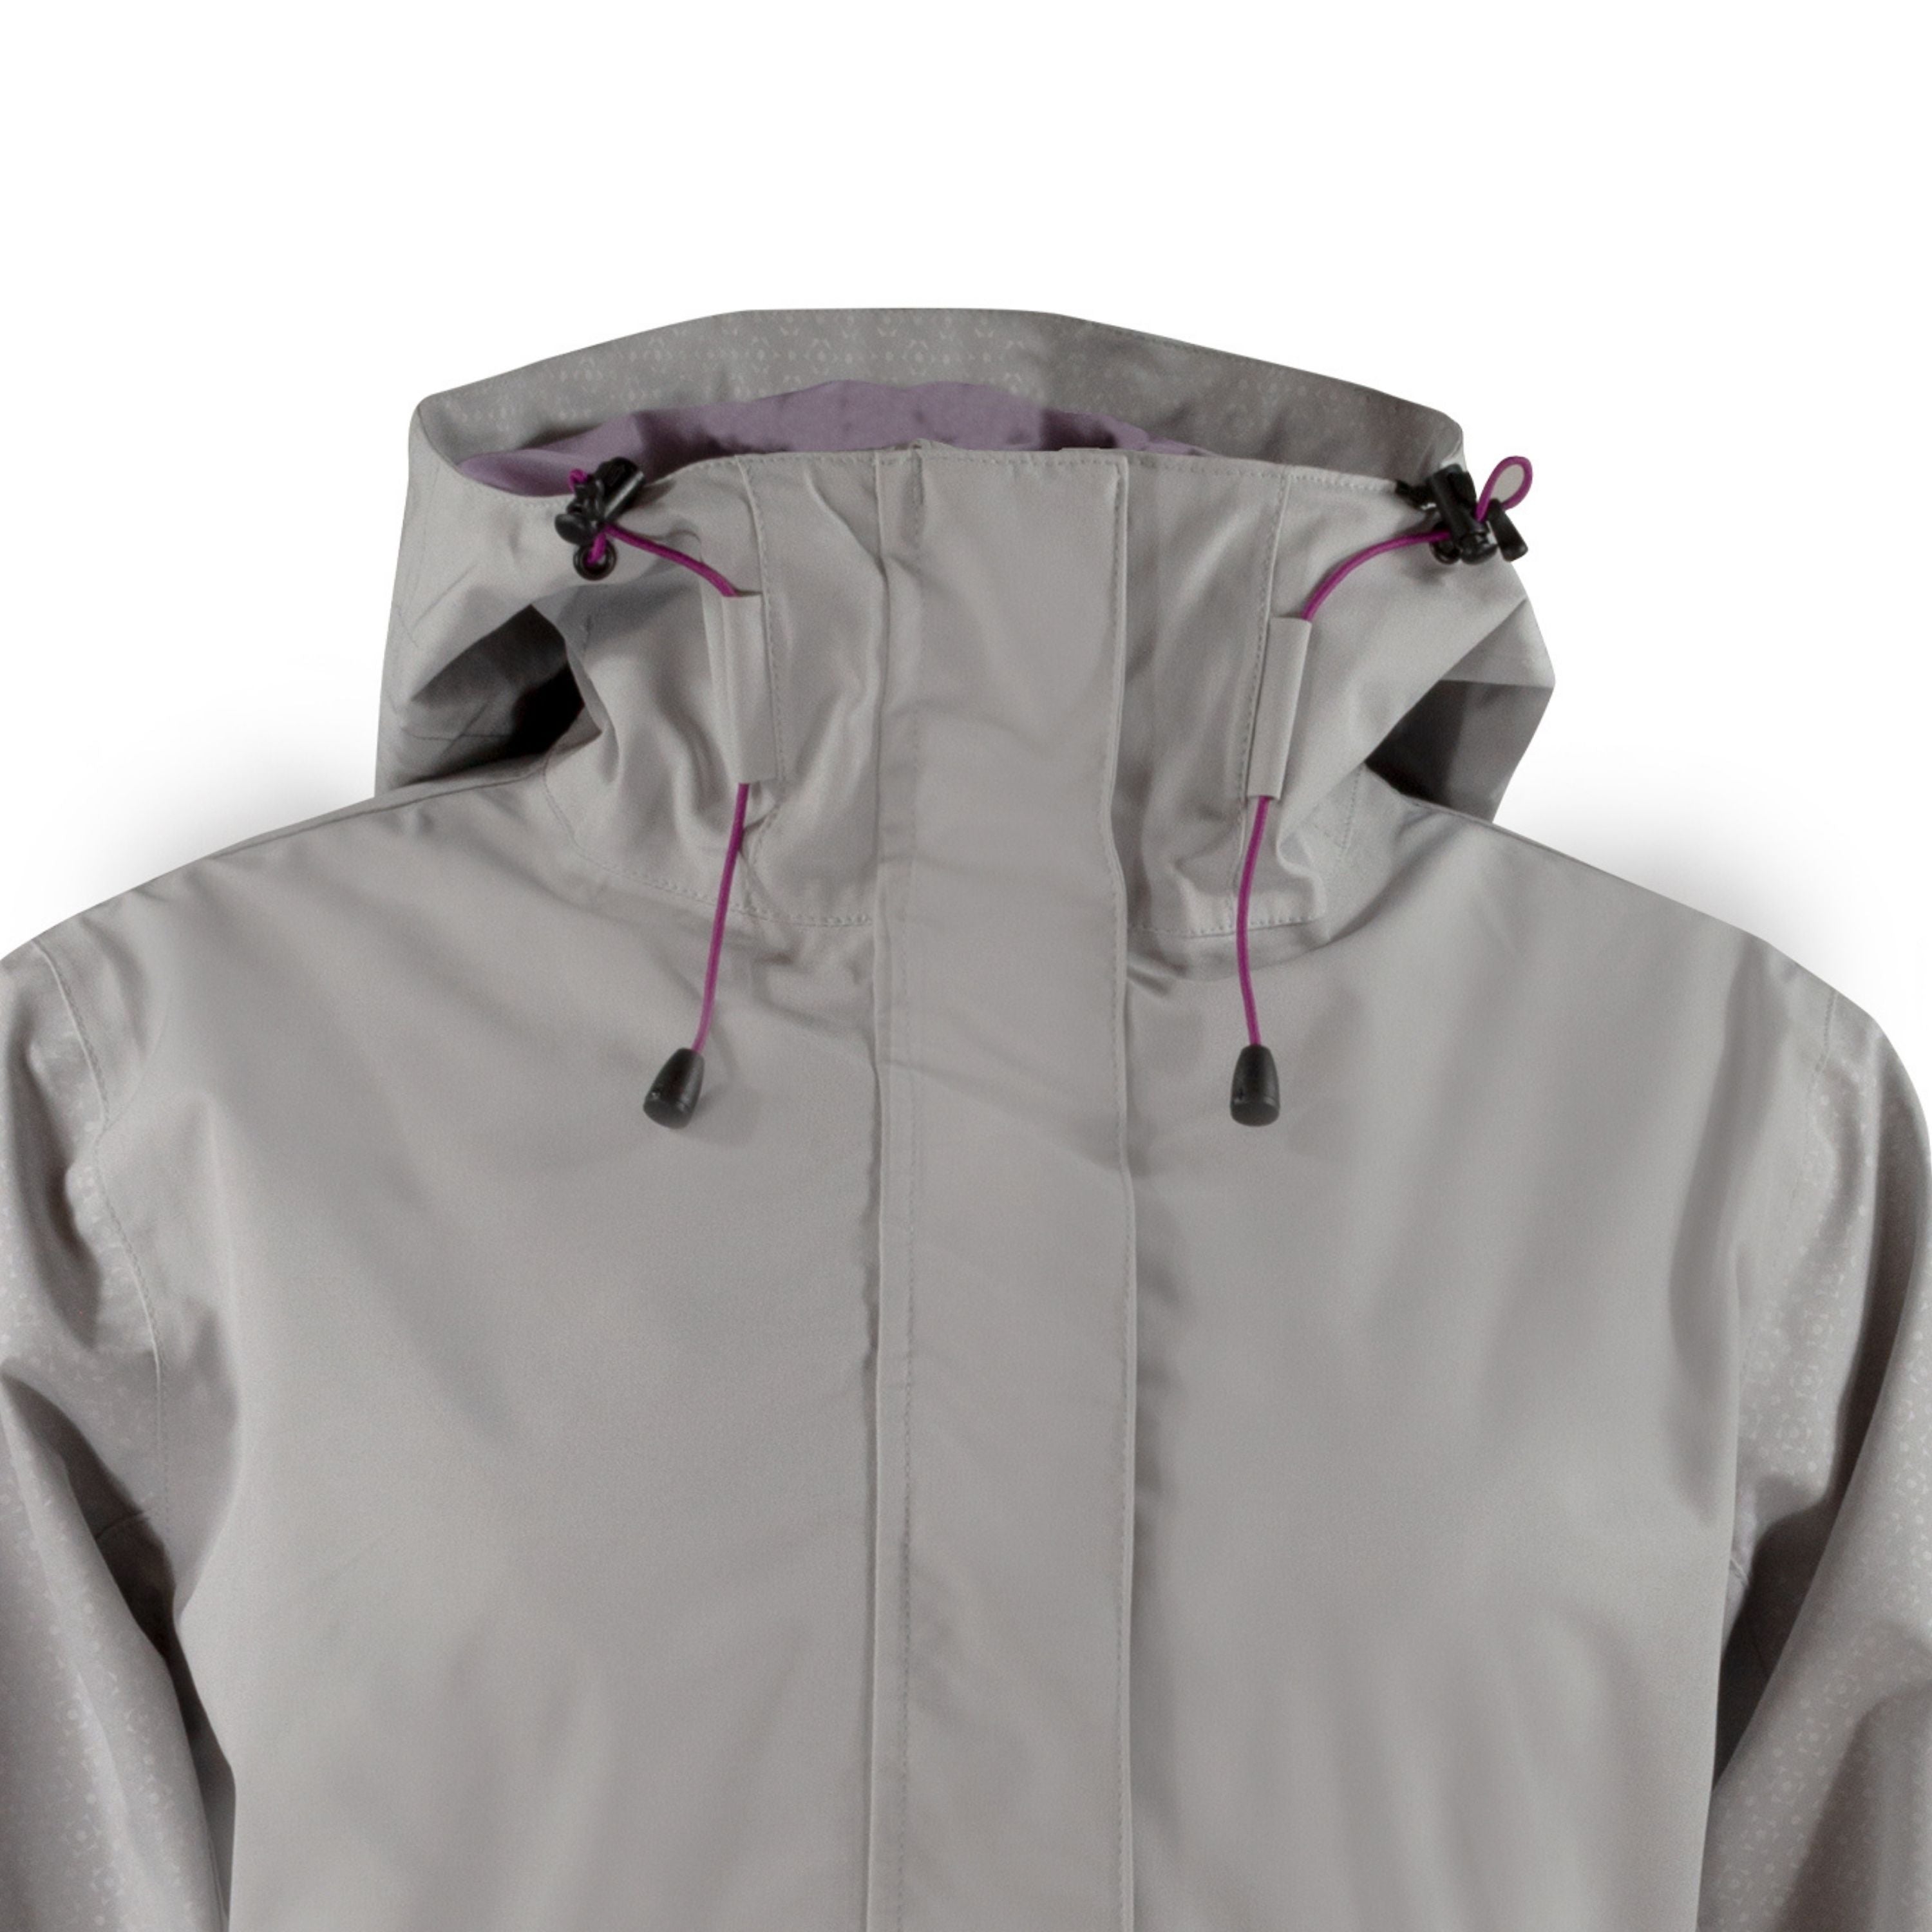 Manteau imperméable extensible - Femme||Stretchable rain jacket - Women’s